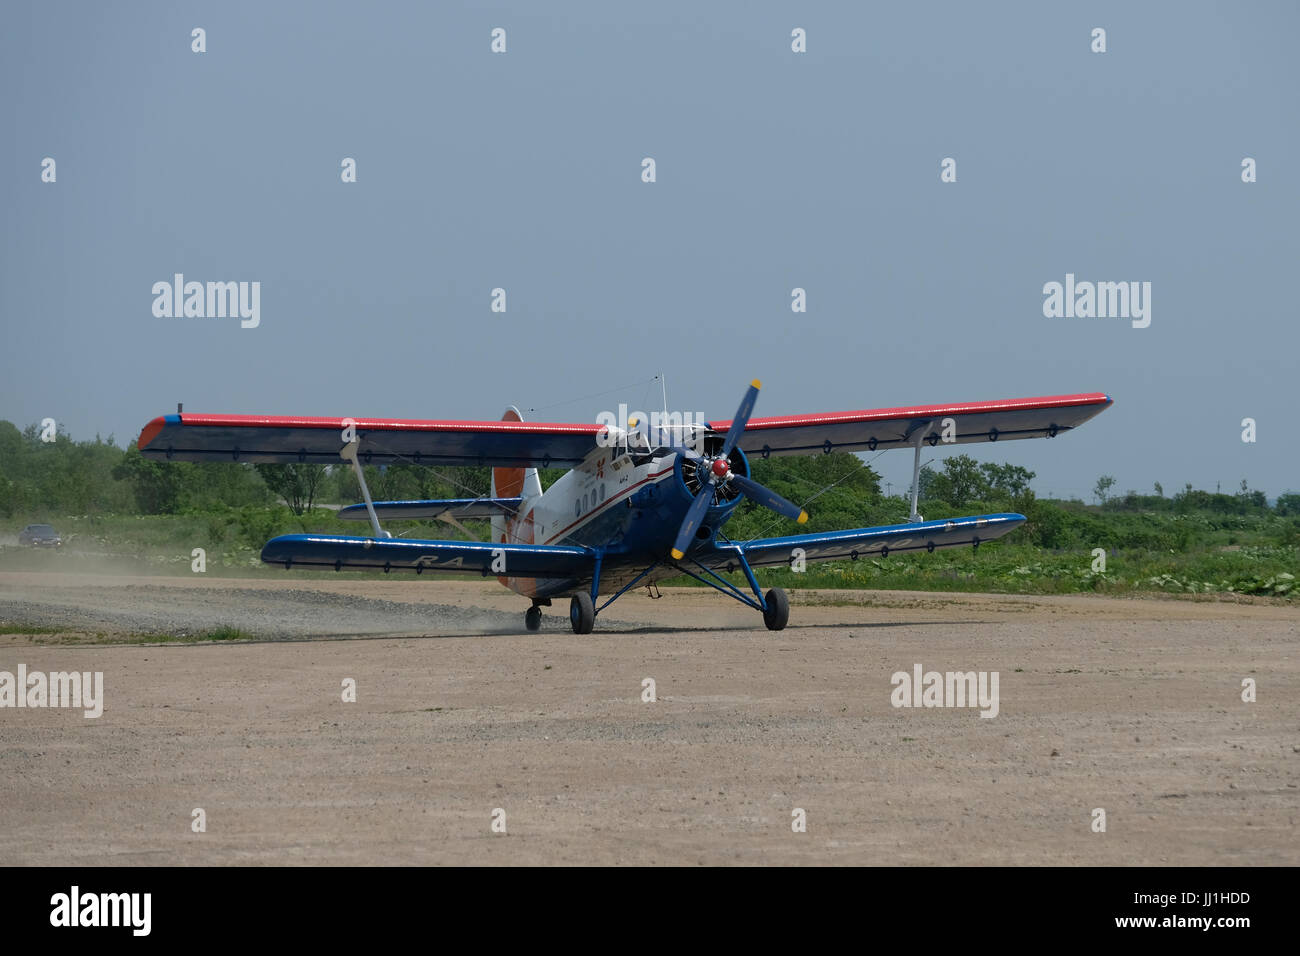 Un ancien avion biplan Antonov an-2 à un seul moteur qui a pris le départ d'une ancienne piste japonaise dans l'île de Sakhalin, dans l'océan Pacifique. Russie Banque D'Images